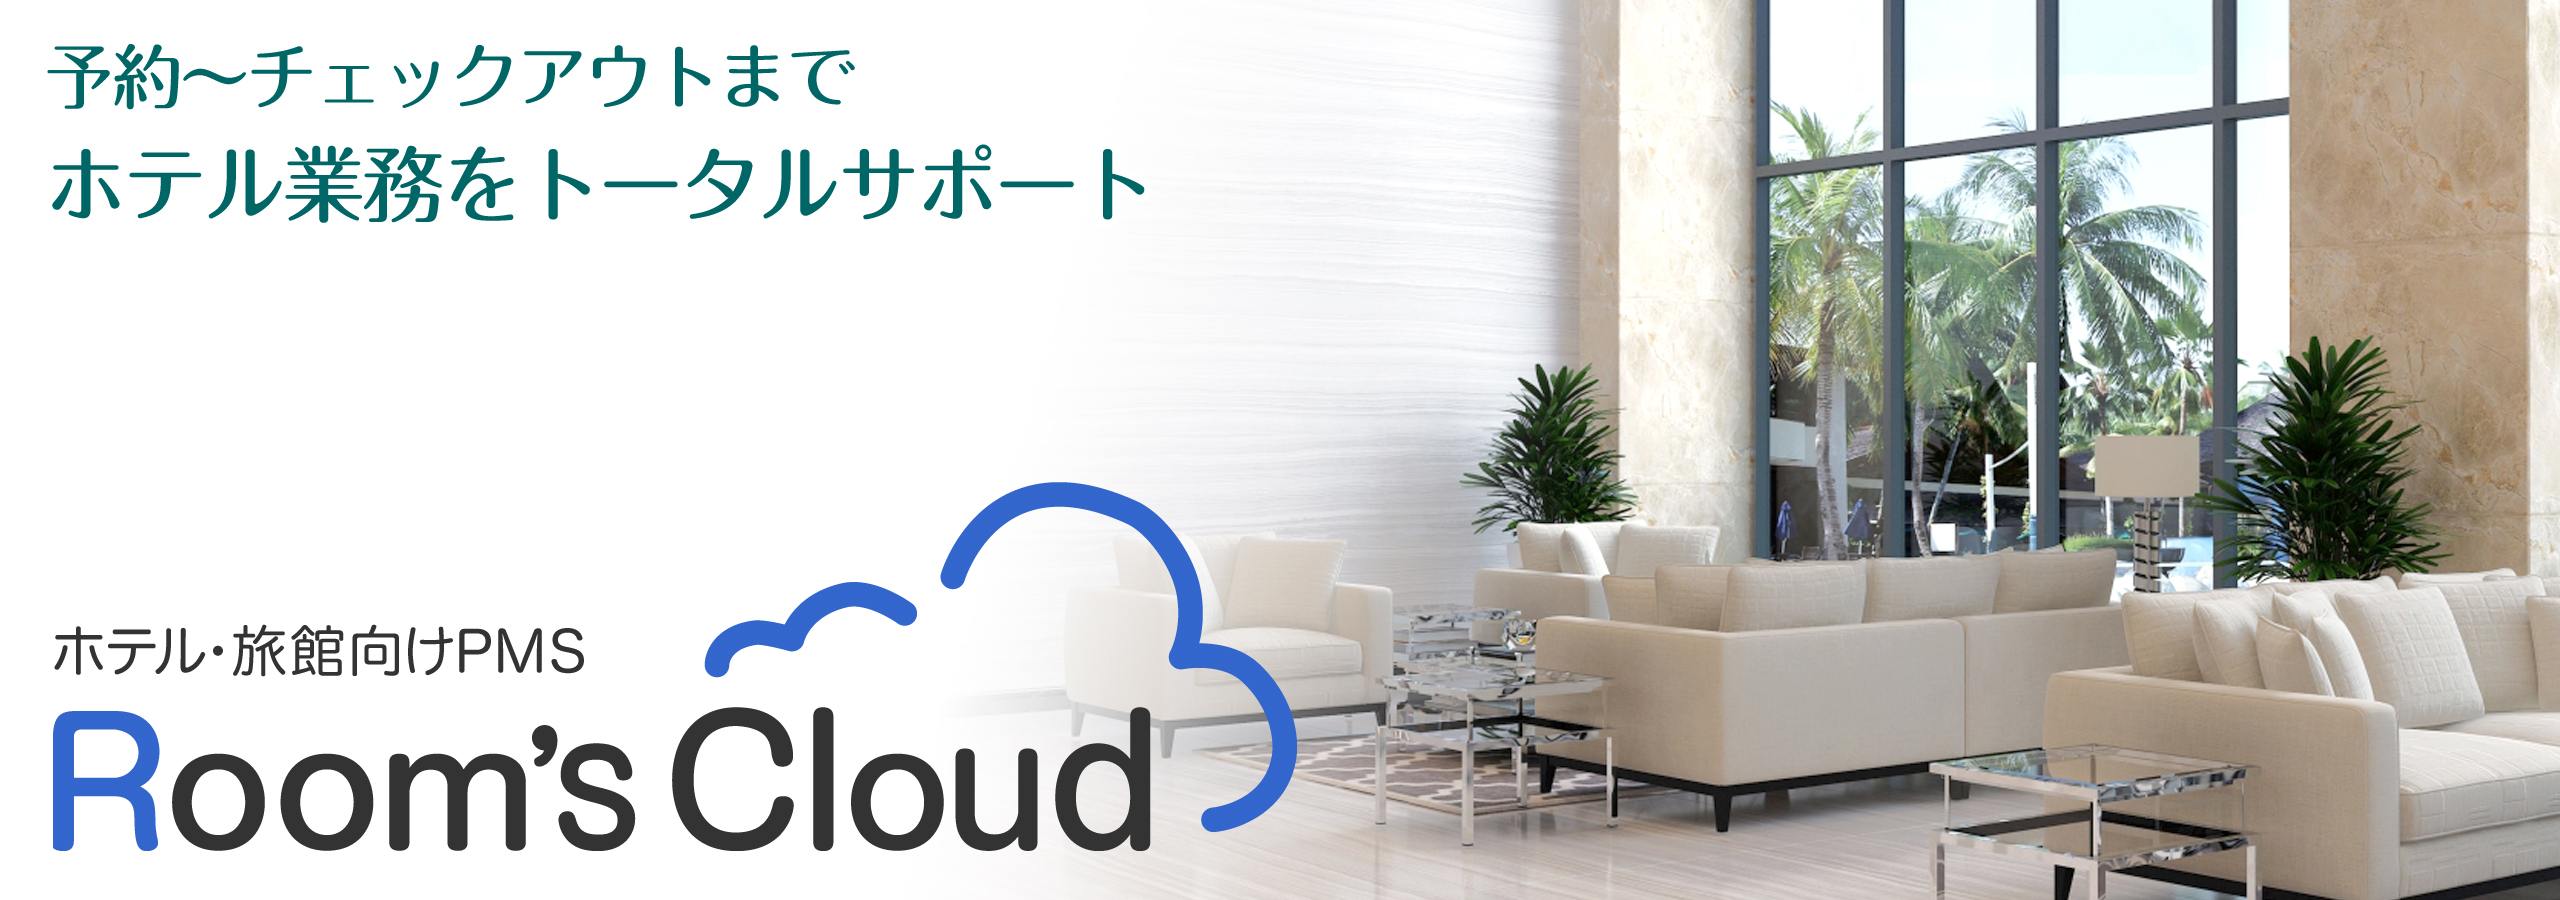 Room's Cloud